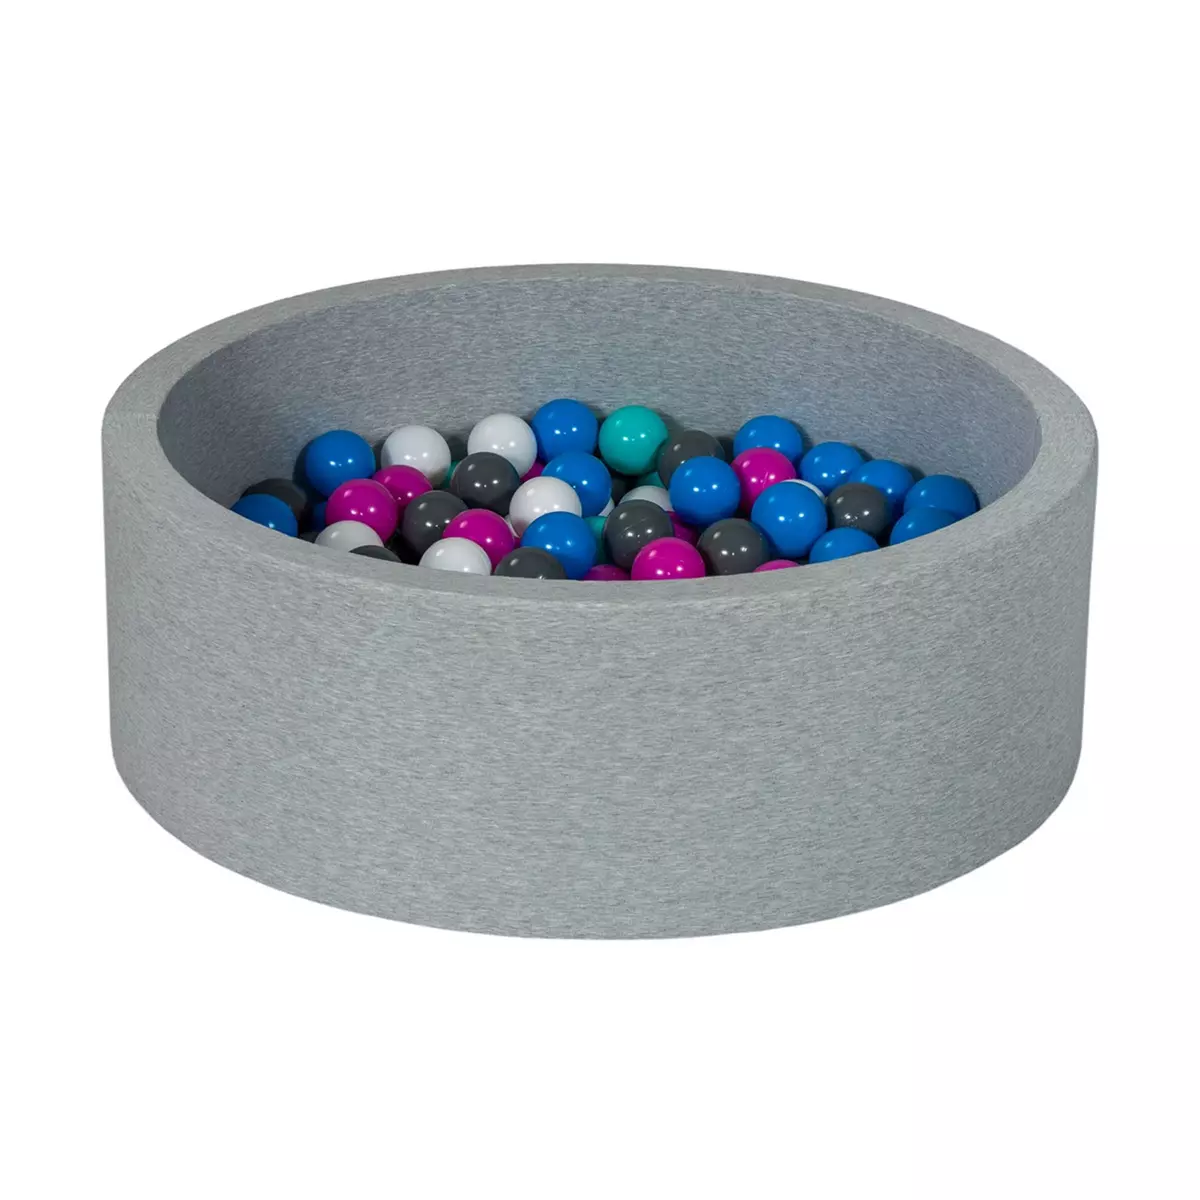  Piscine à balles Aire de jeu + 200 balles blanc,bleu,rose,gris,turquoise